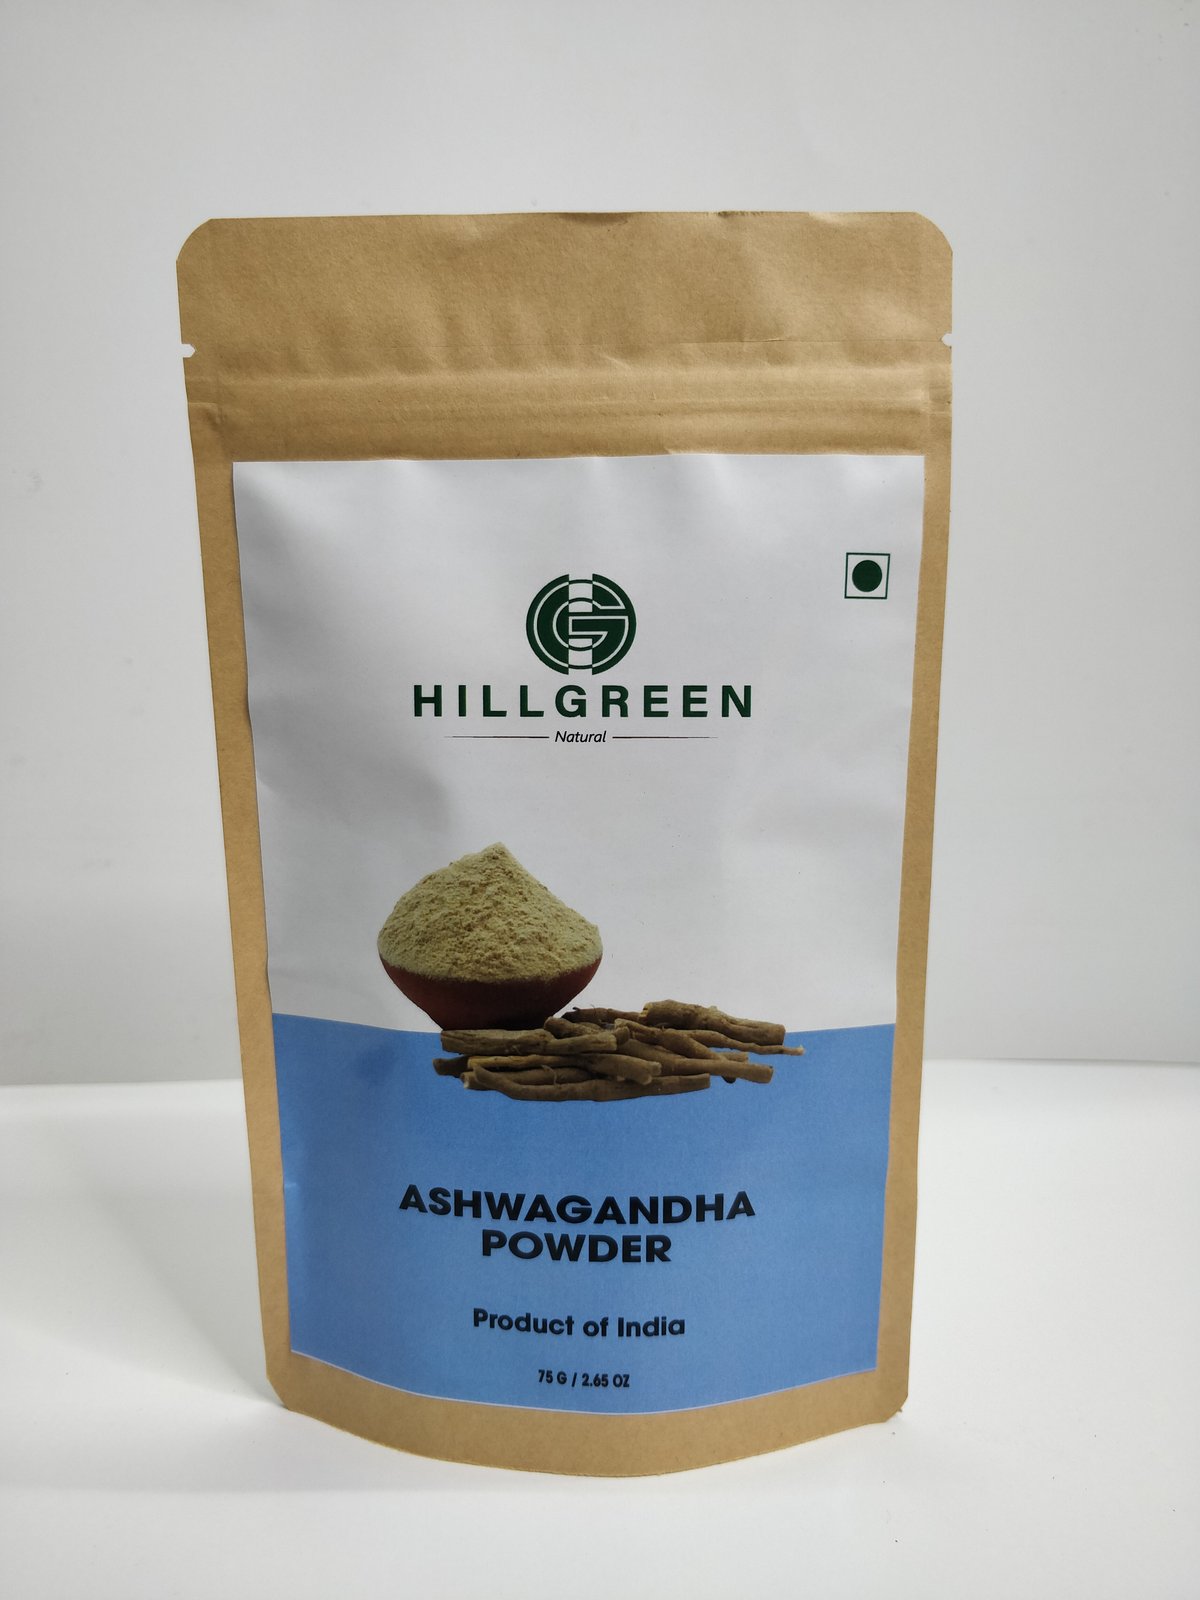 Product: Hillgreen Natural, Ashwagandha Powder, 75g